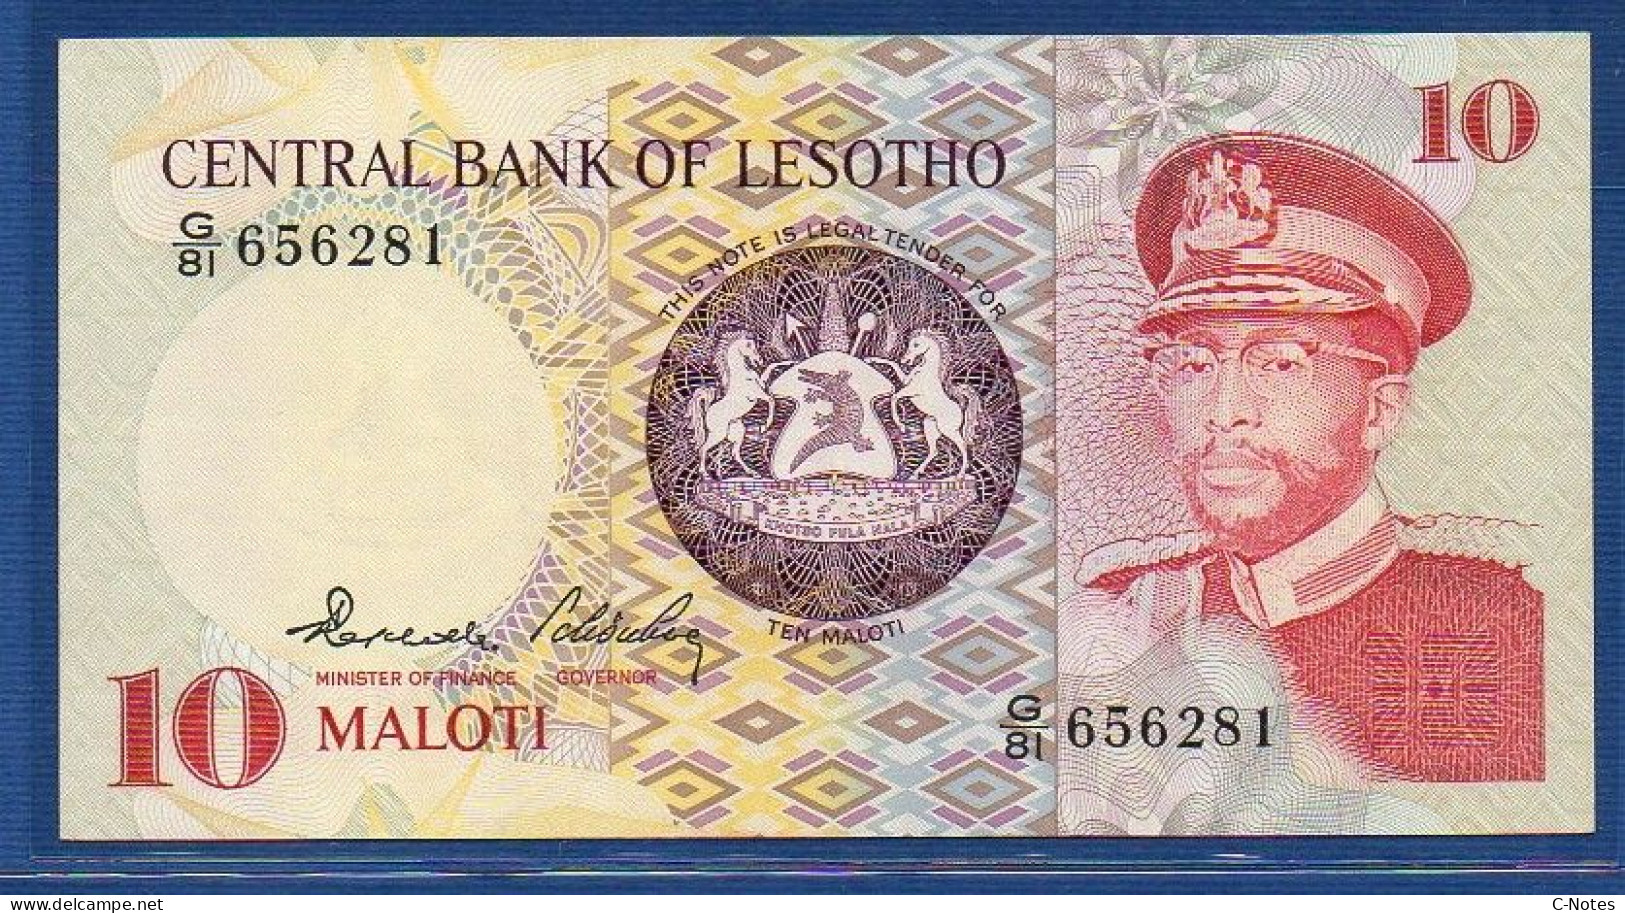 LESOTHO - P. 6b – 10 Maloti 1981 AUNC, S/n G/81 656281 - Lesotho